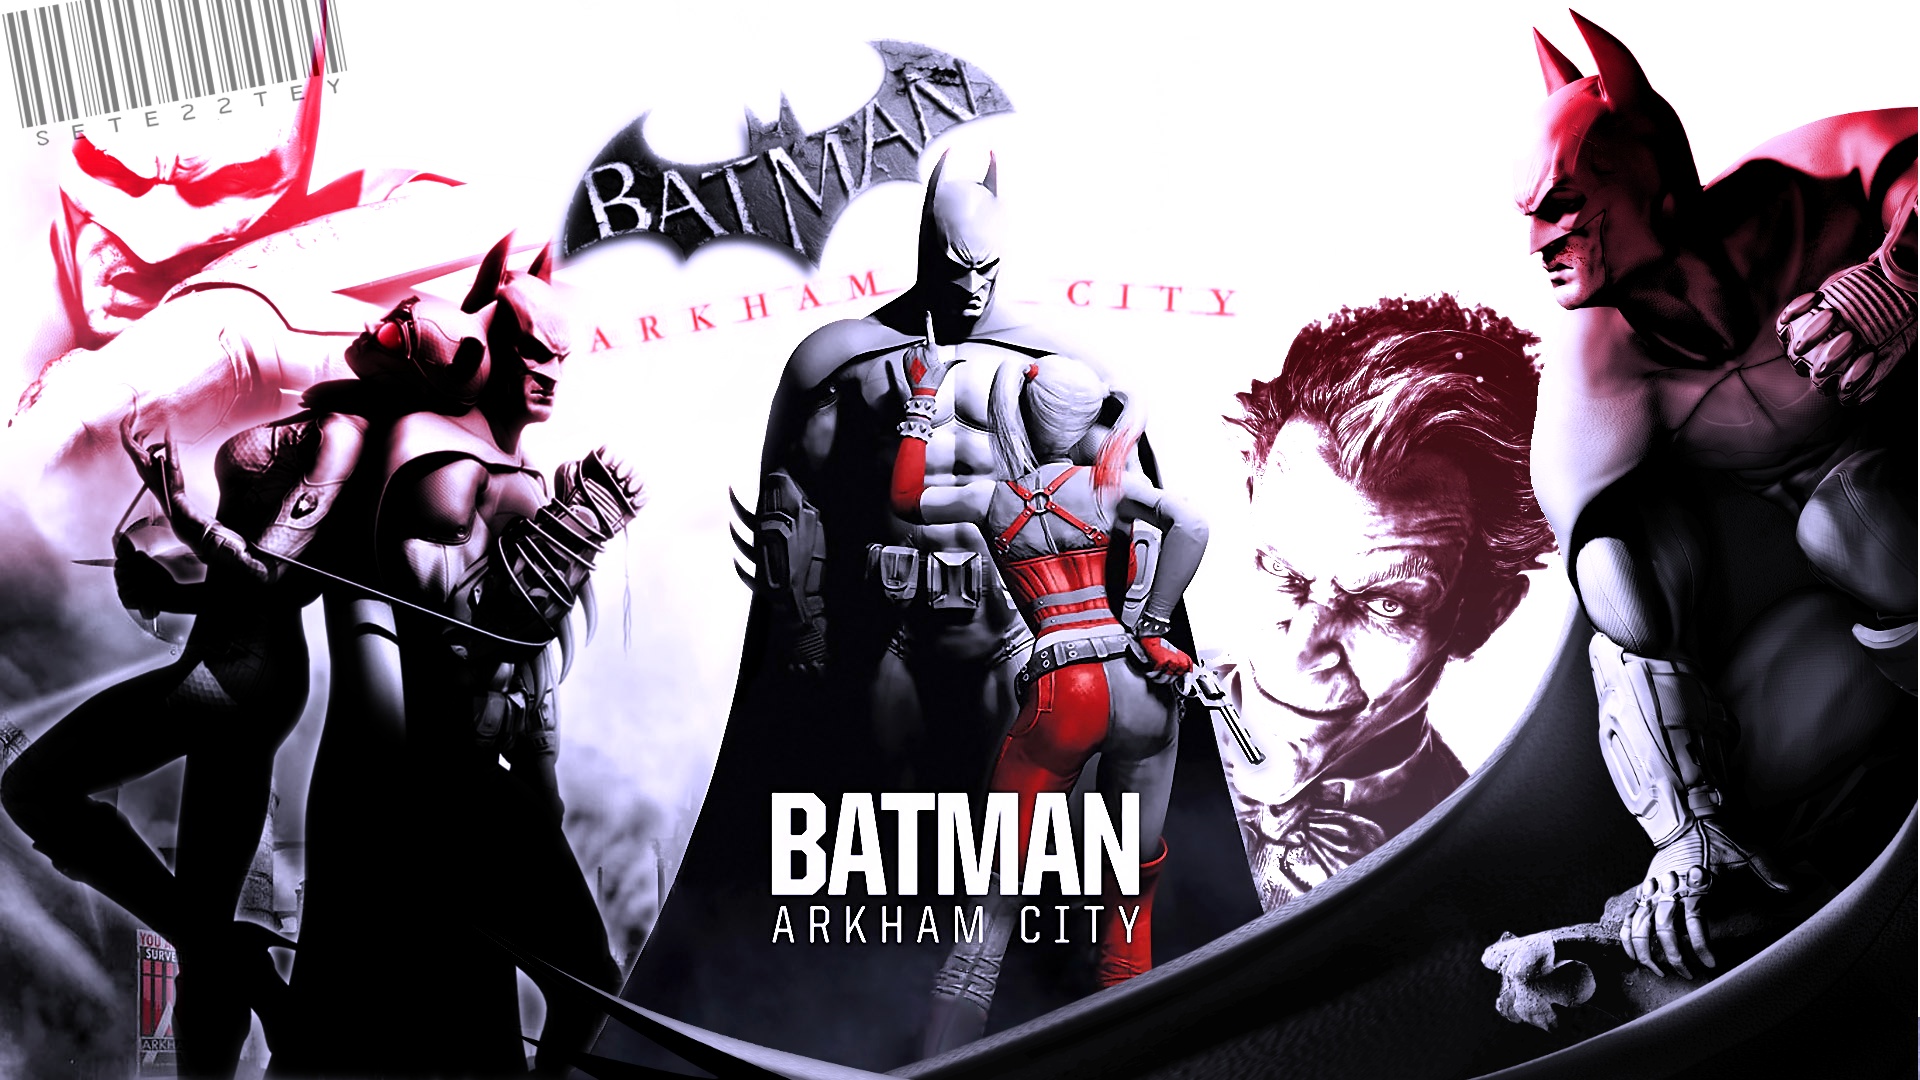 バットマンアーカムシティ壁紙,架空の人物,スーパーヒーロー,バットマン,映画,グラフィックデザイン